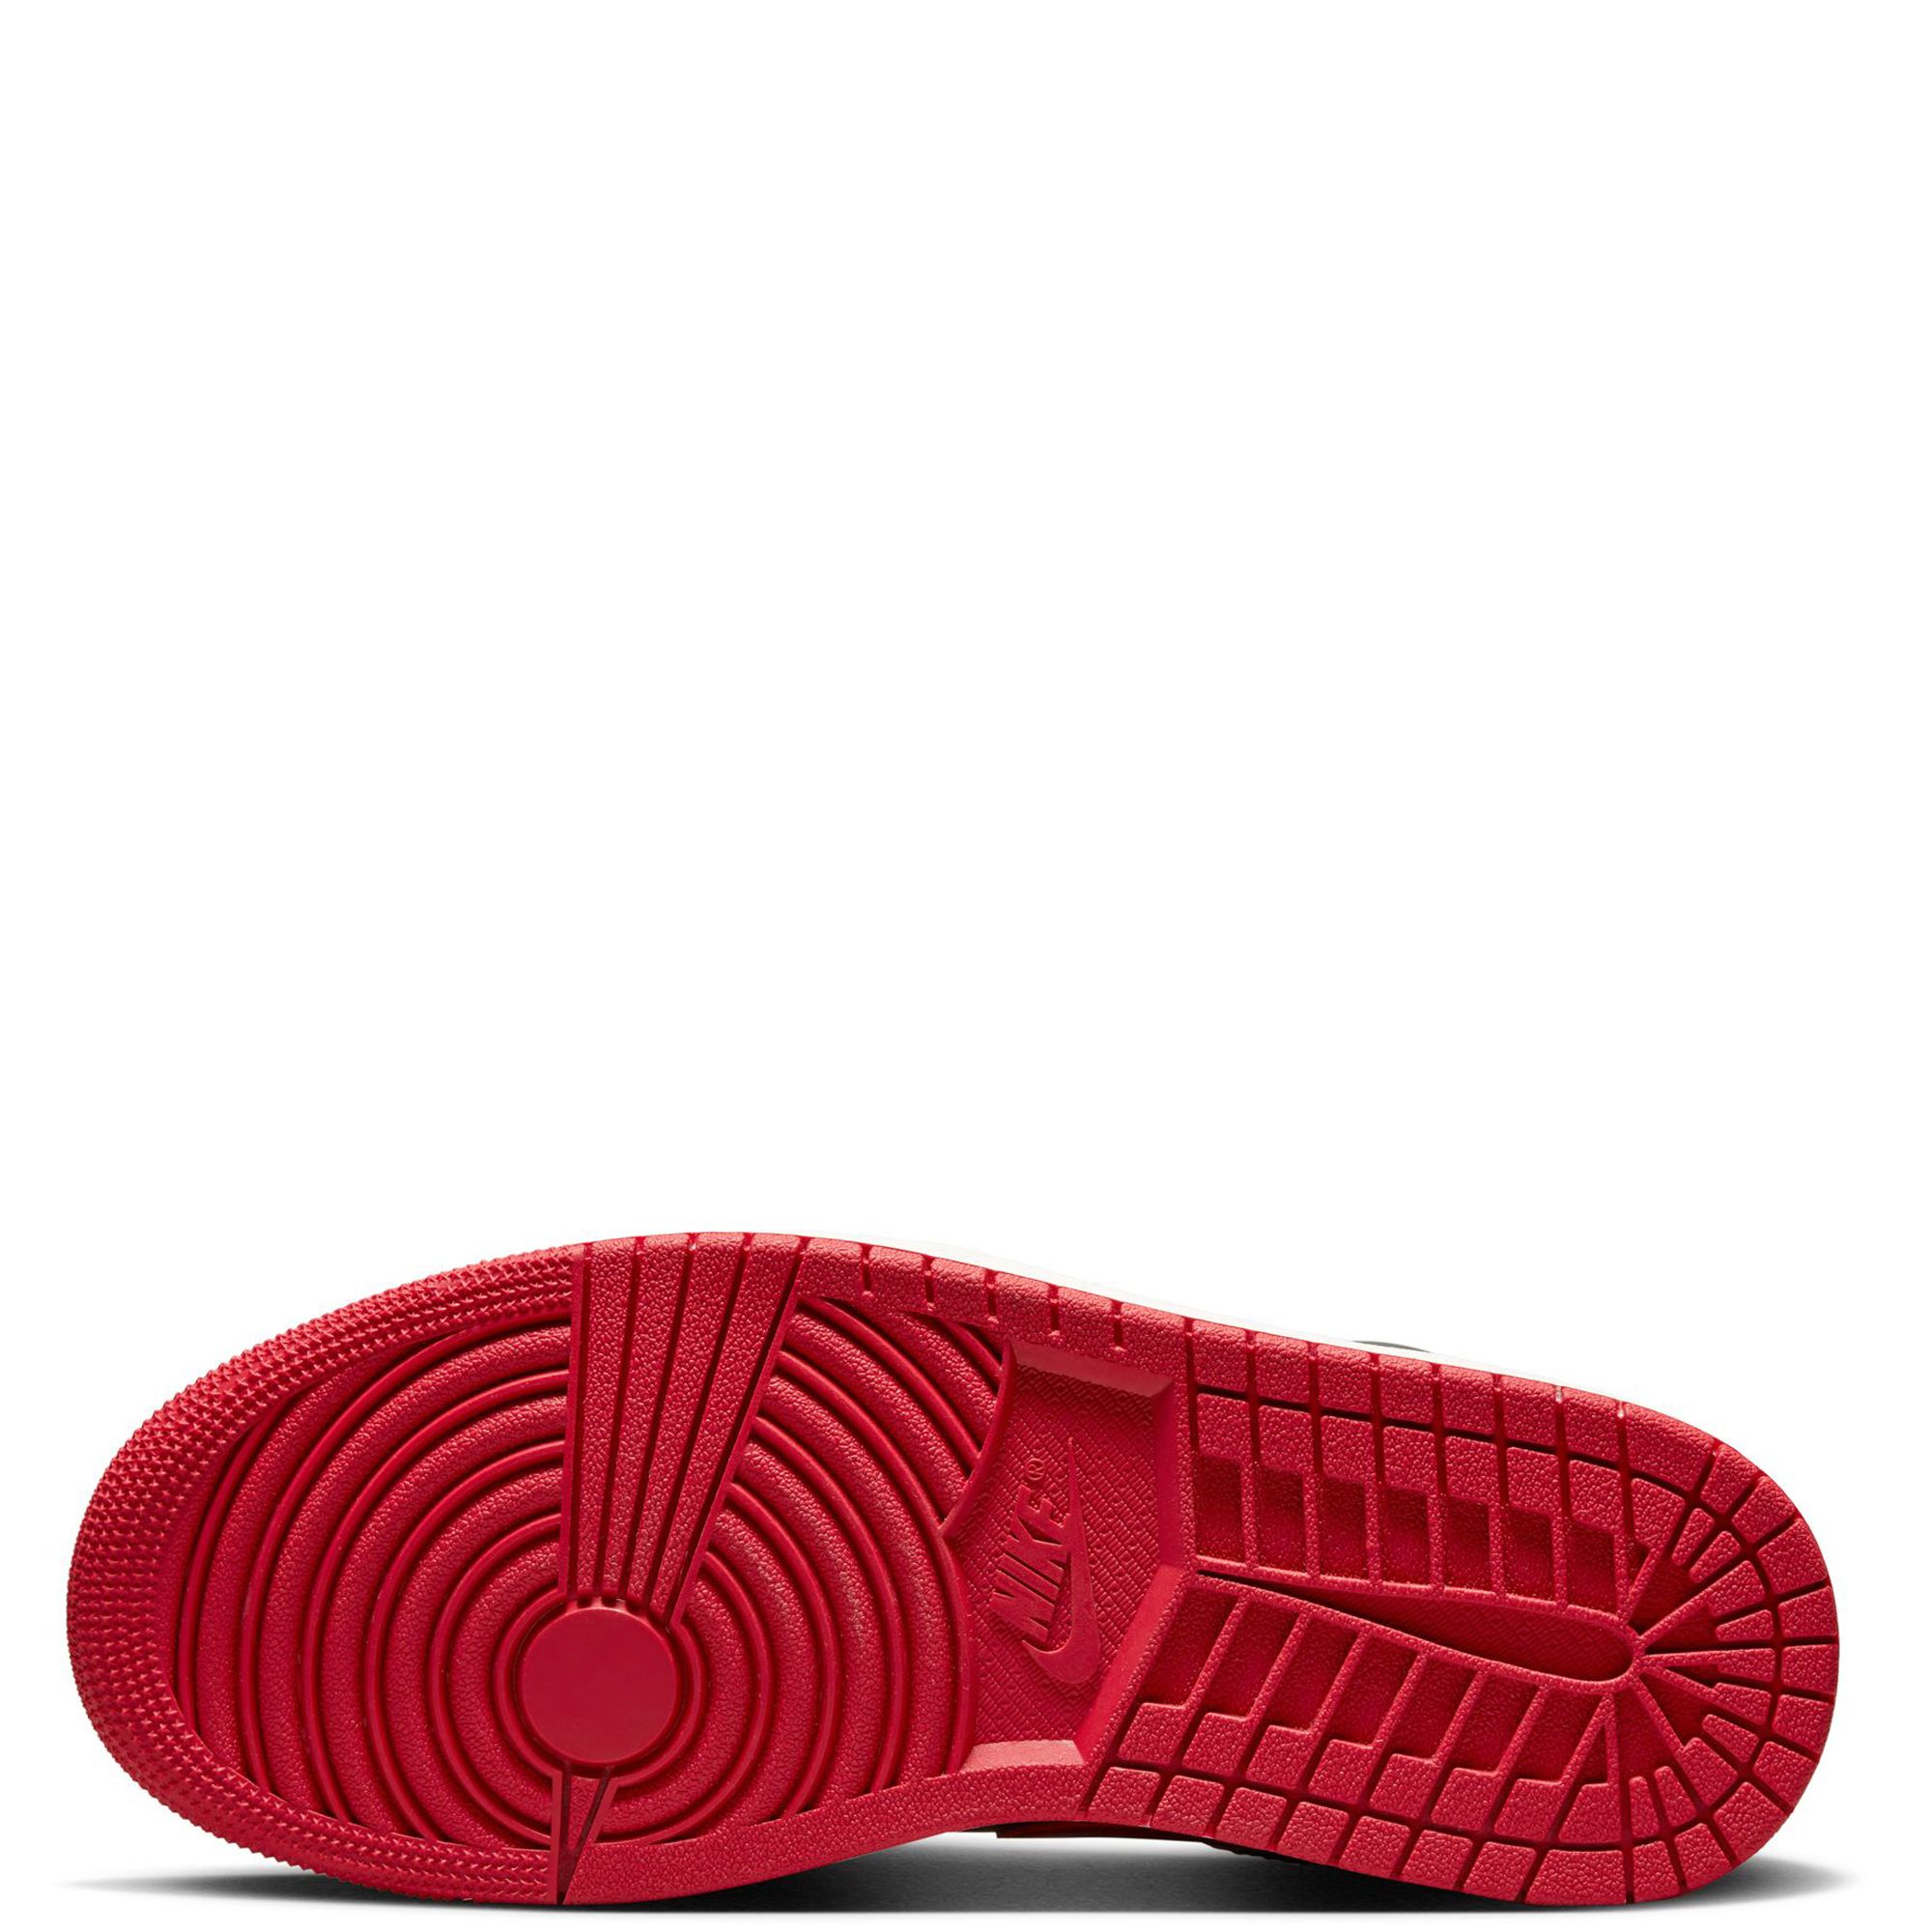 Jordan Air Jordan 1 Low Sneaker in White, Gym Red, Black, & Sail